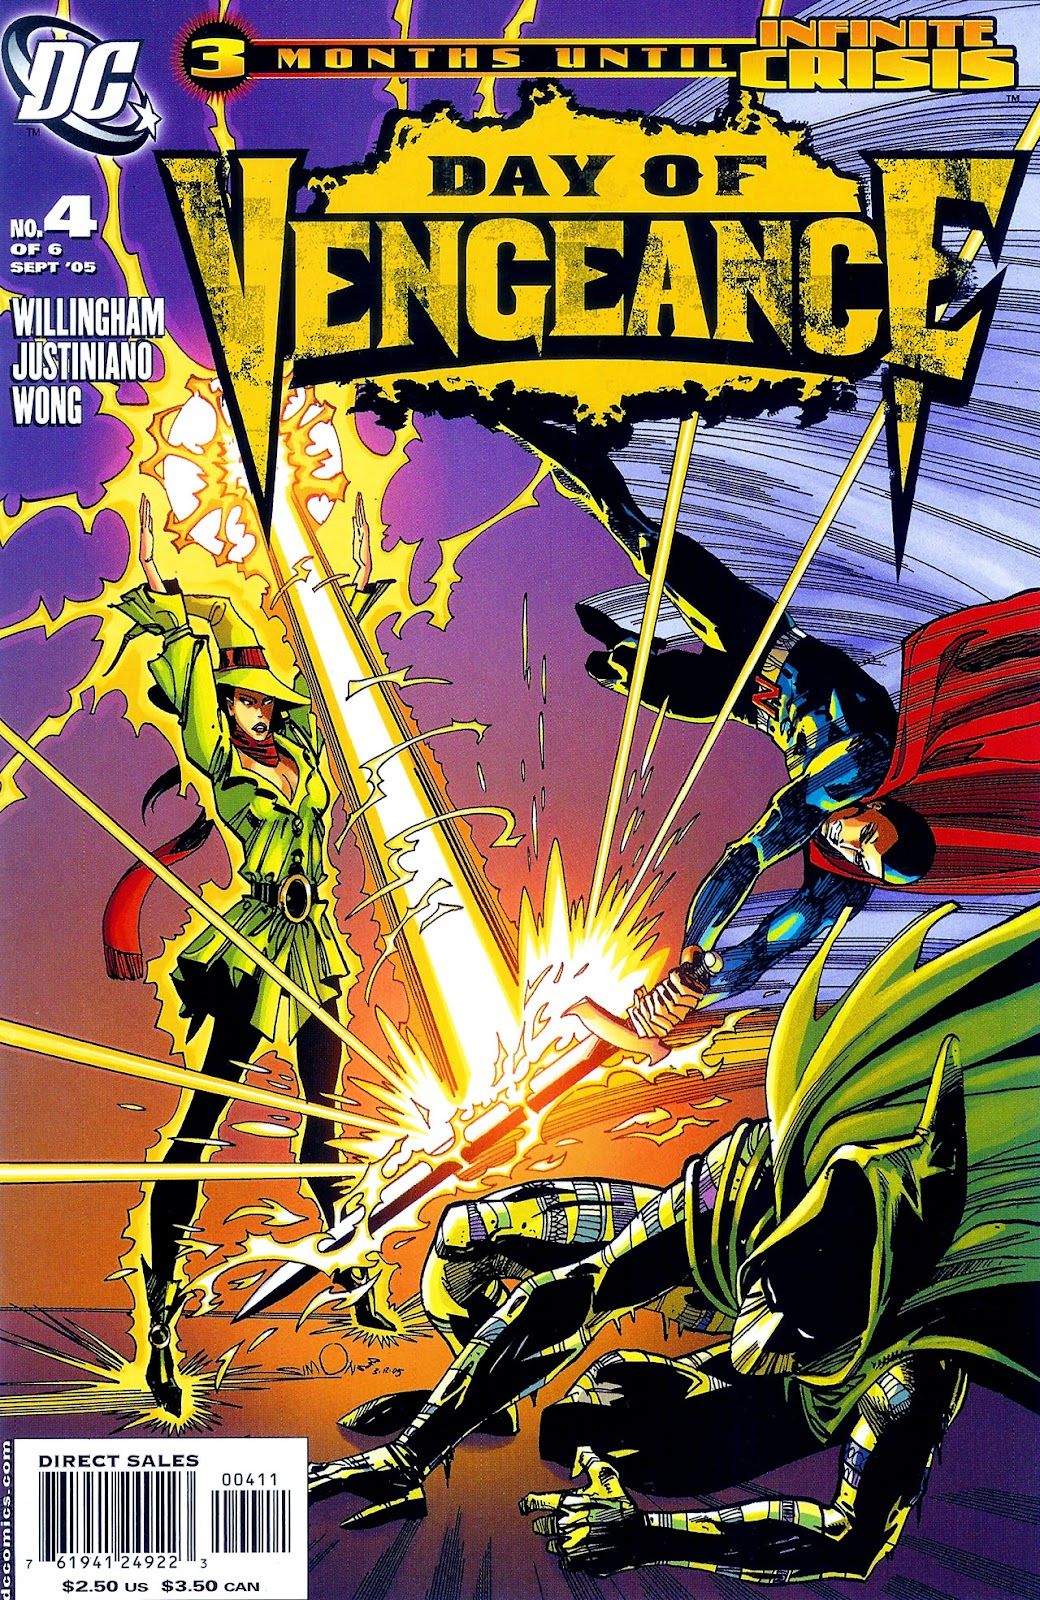 Был ли сериал DC Shadowpact изначально задуман как сериал Vertigo?